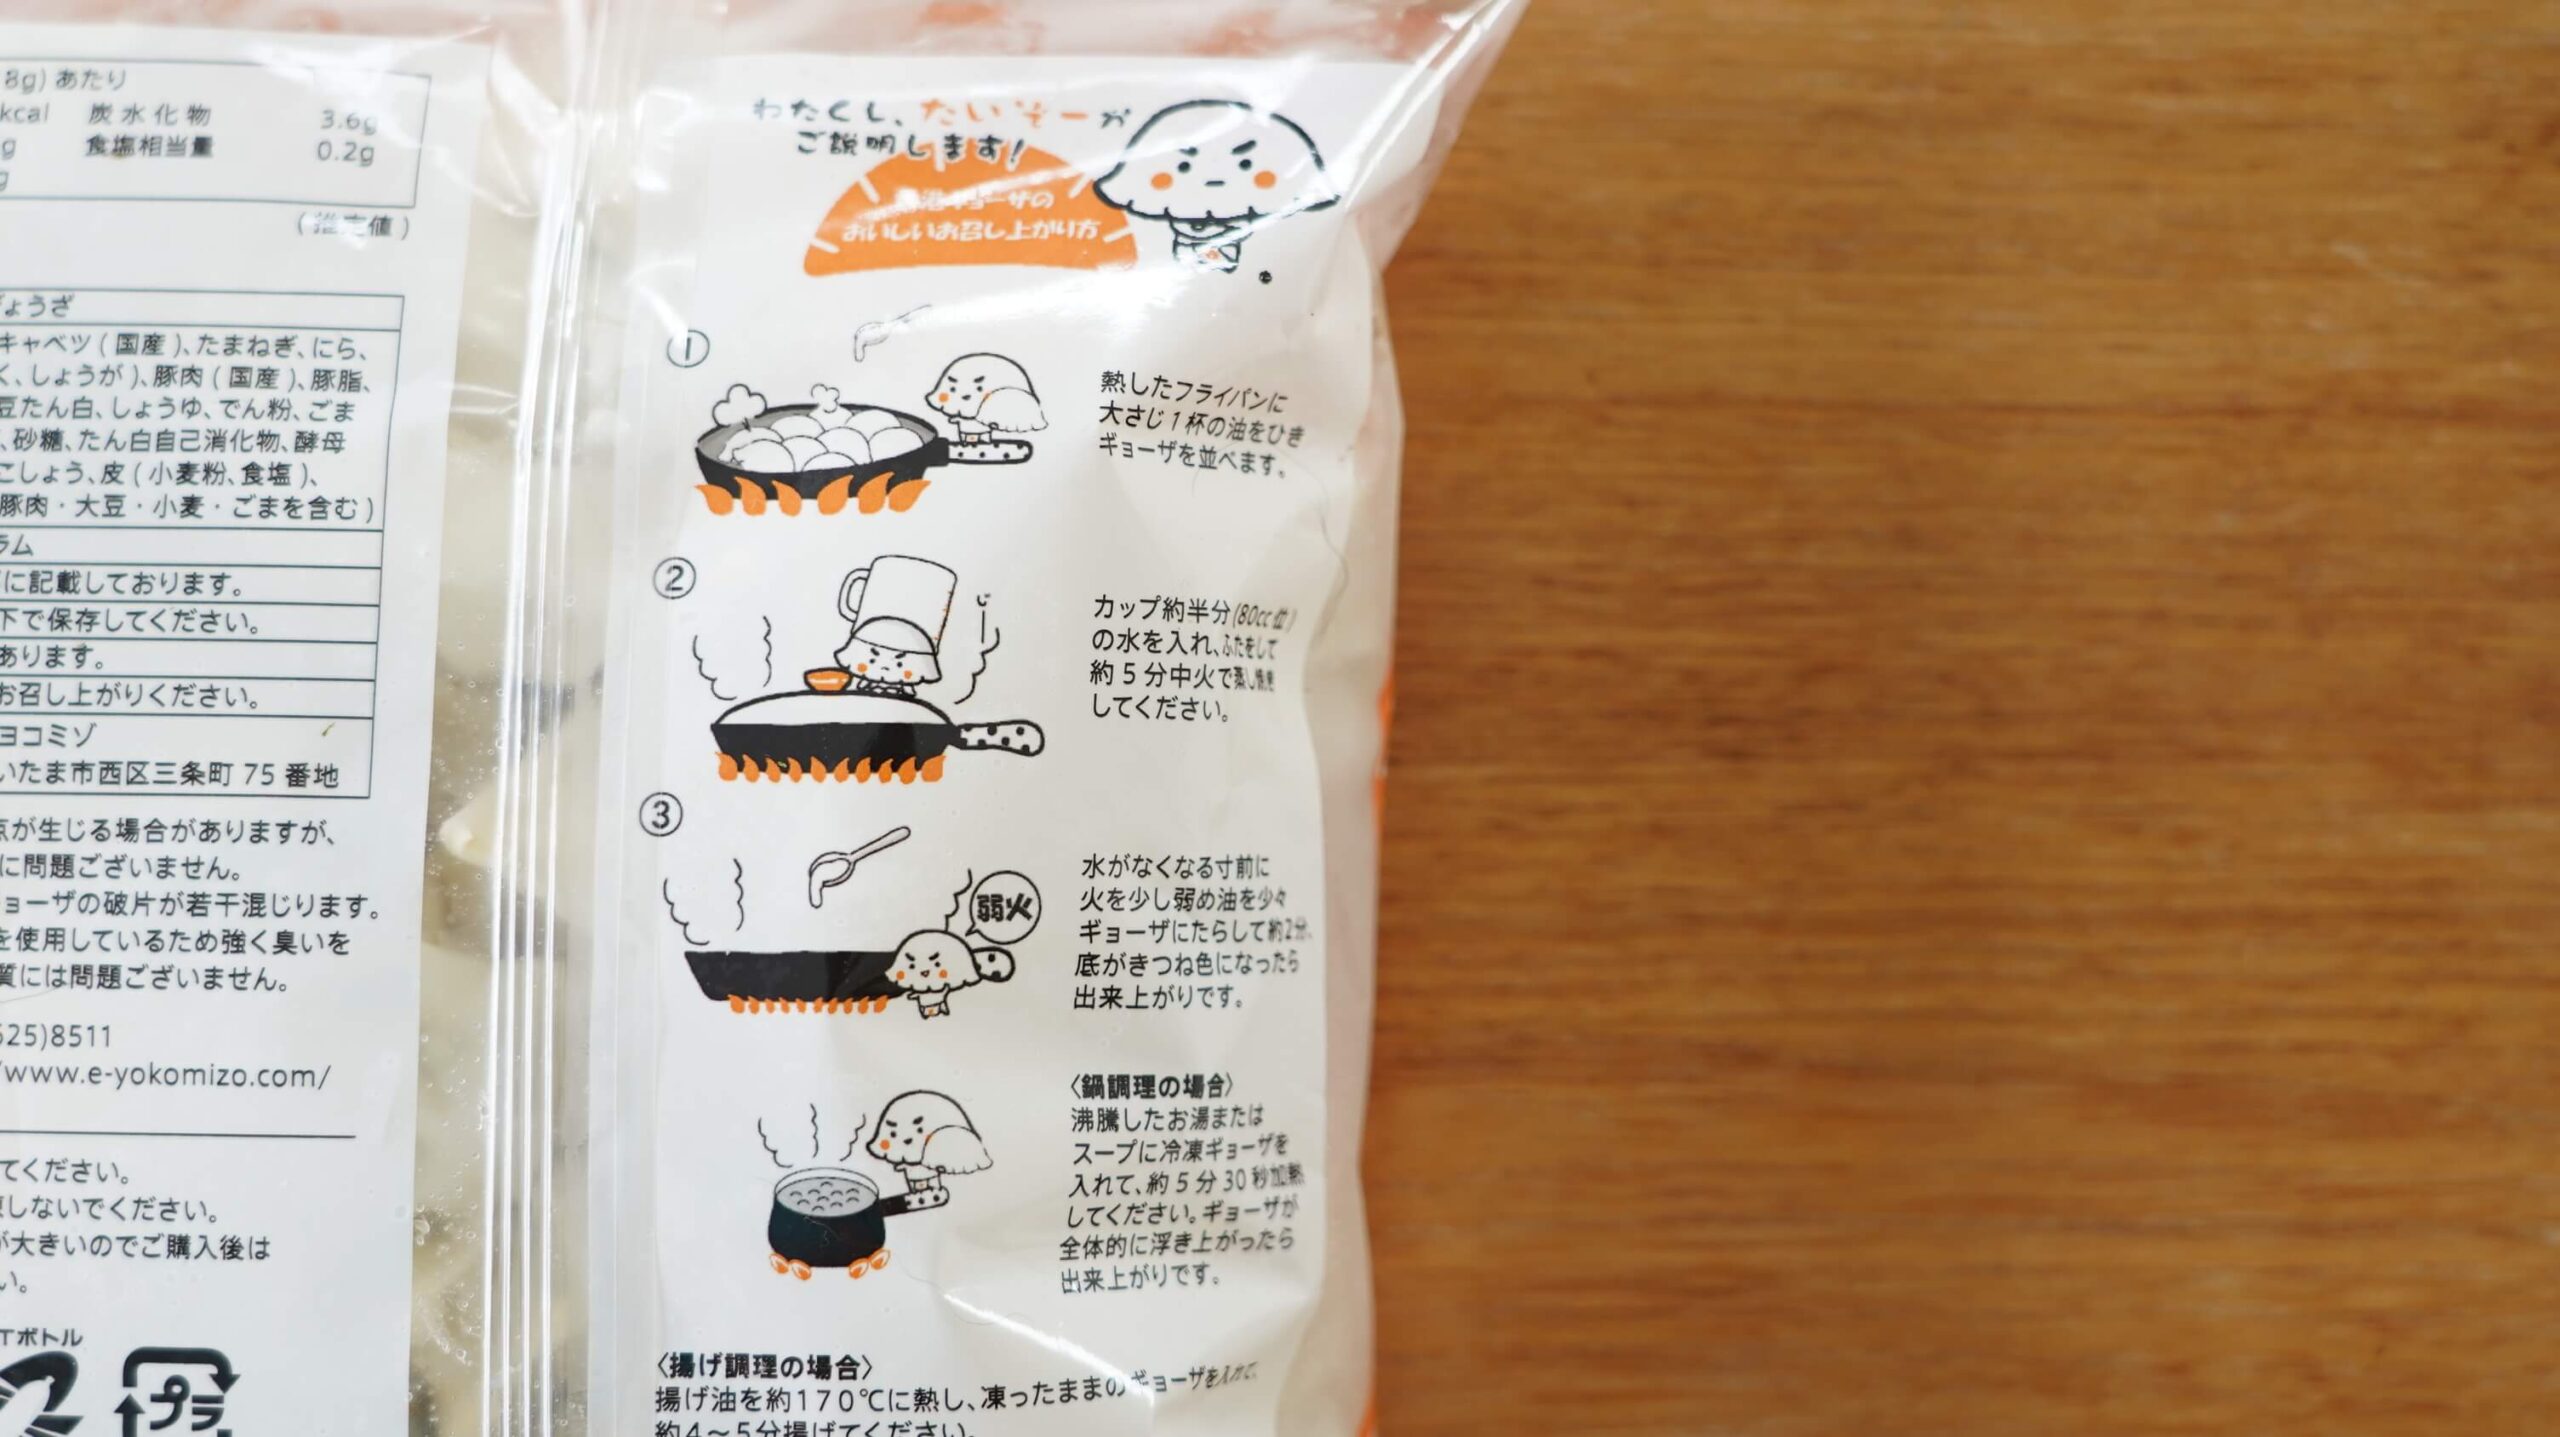 生協宅配限定の冷凍餃子「香港ギョーザ」のパッケージ裏面の焼き方の写真